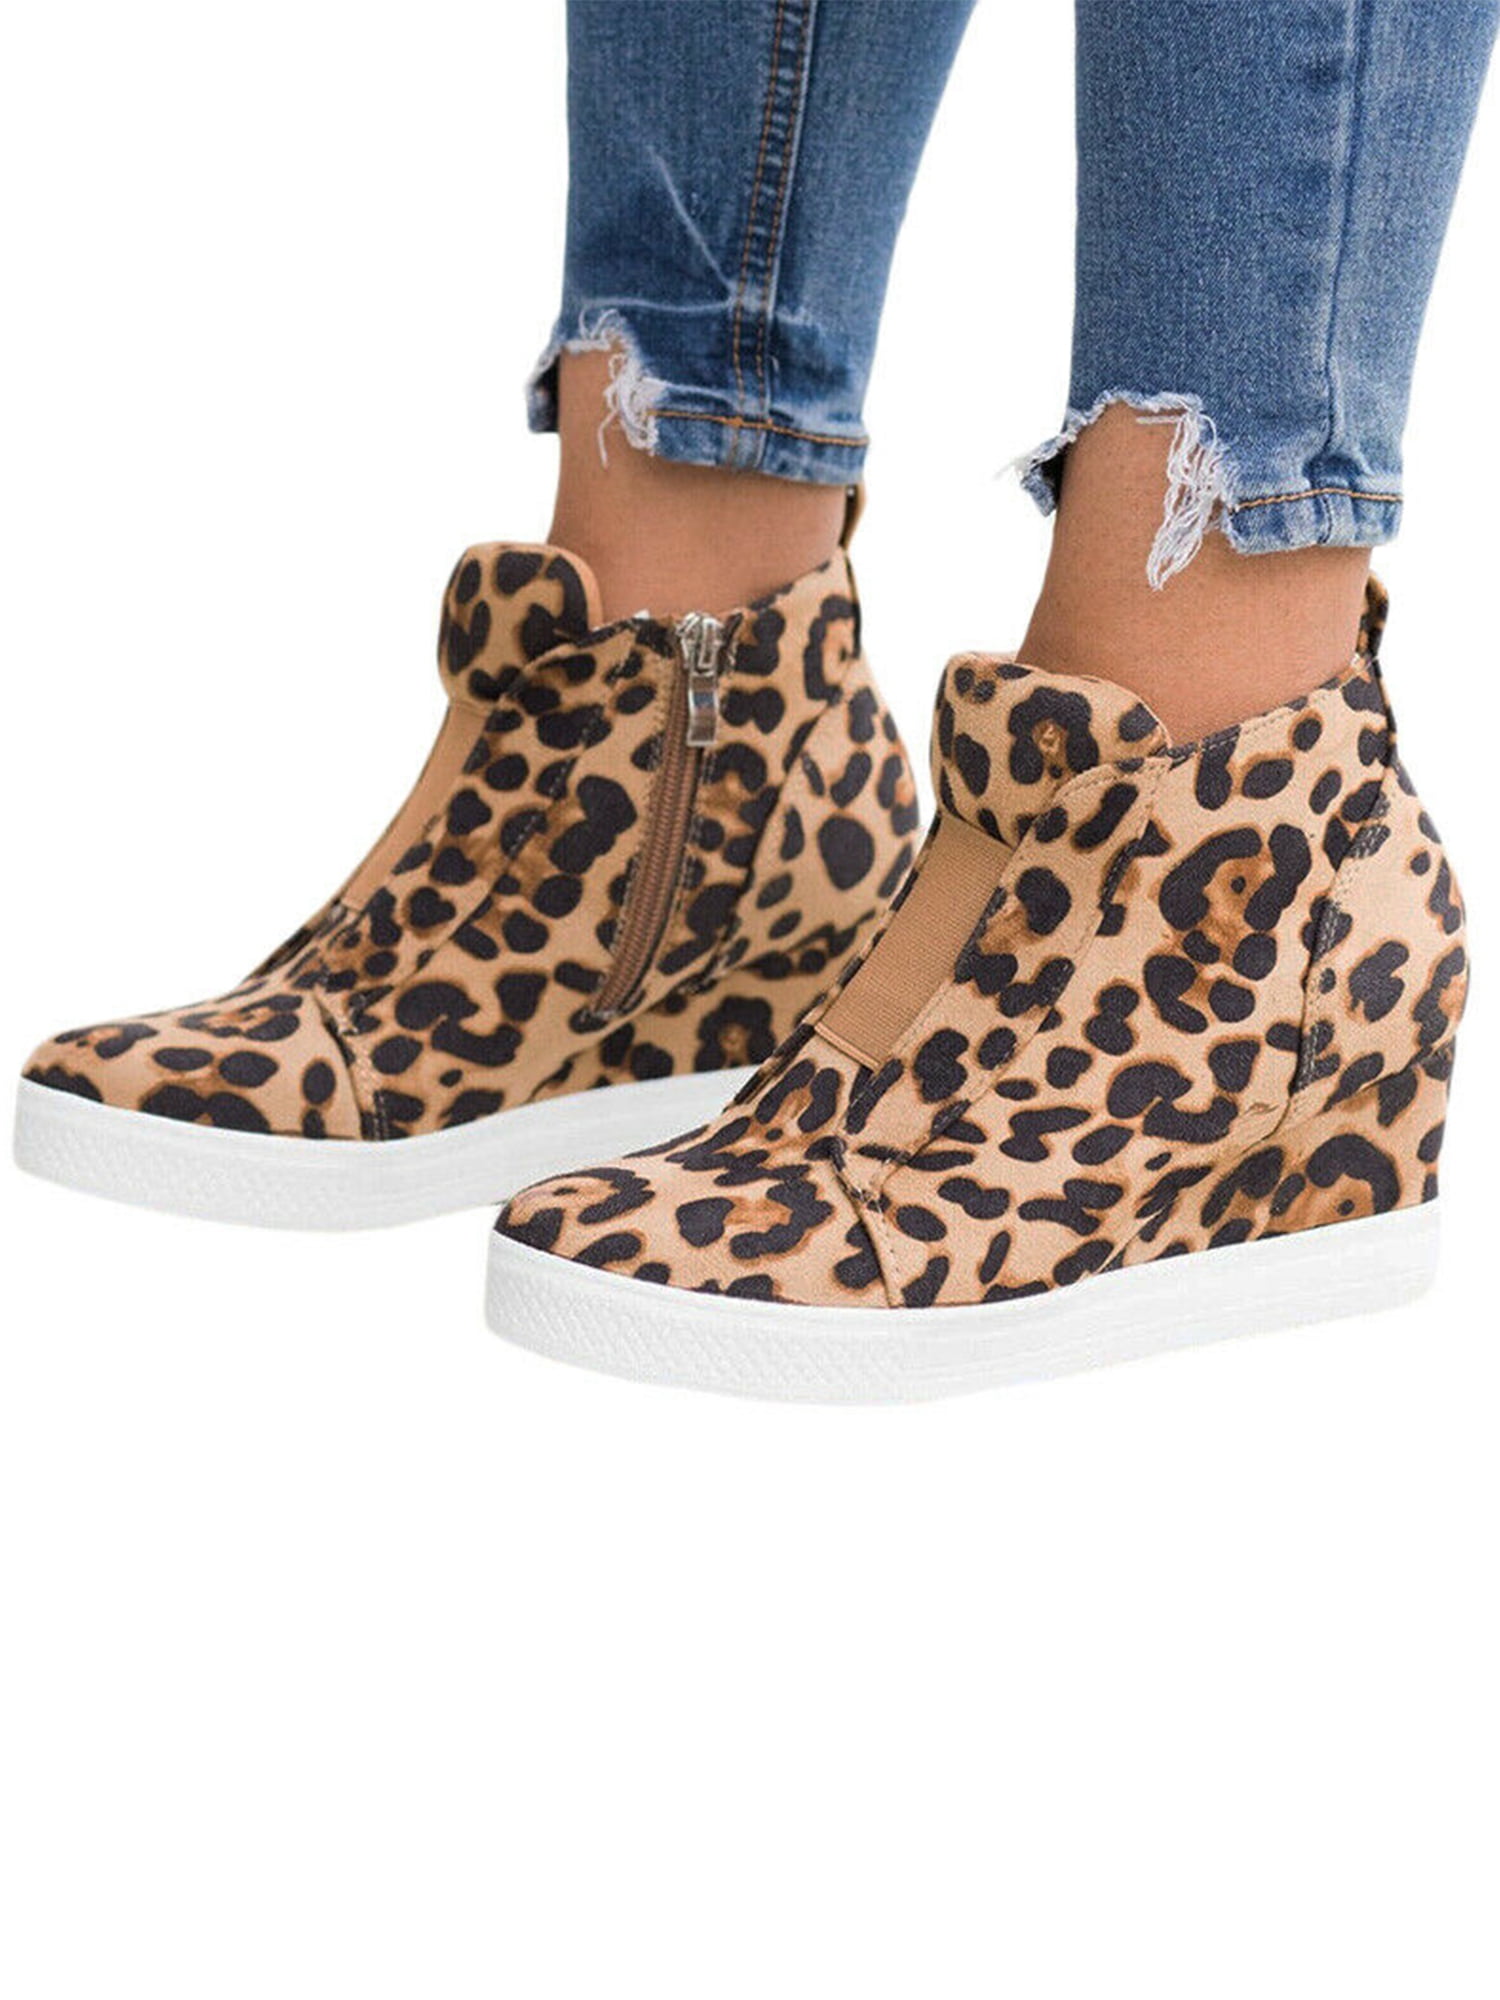 leopard sneaker bootie